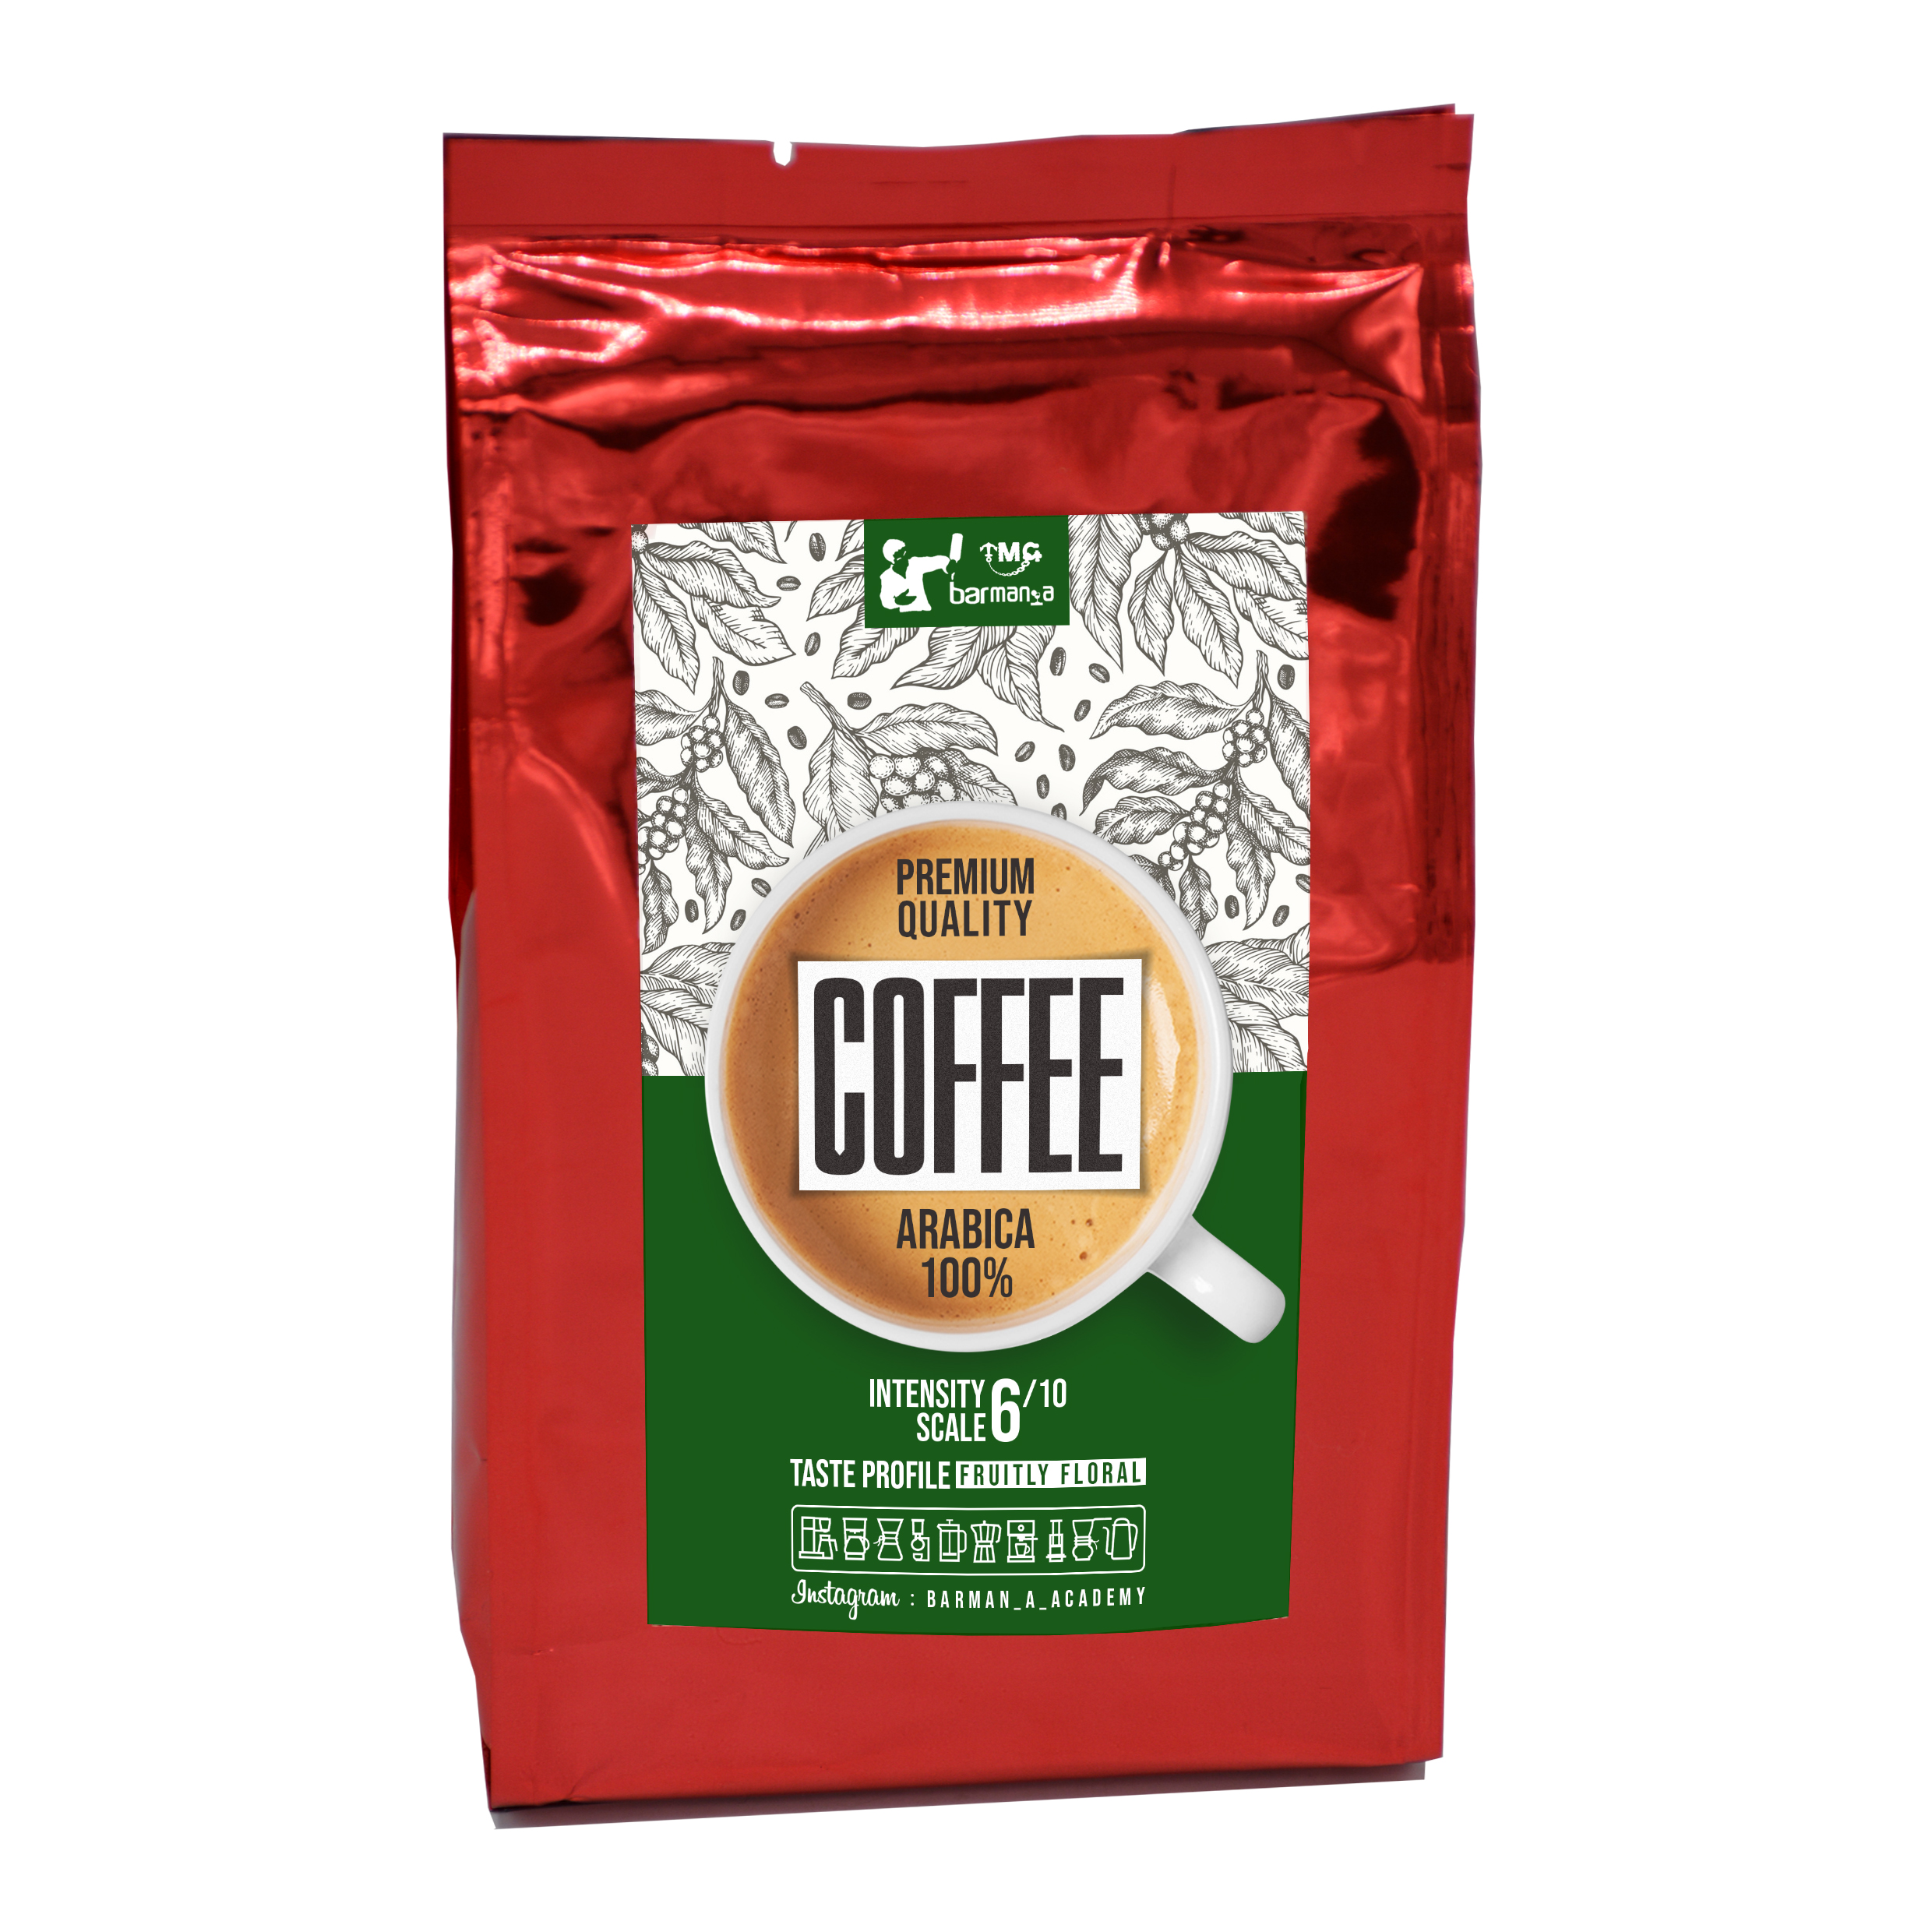 قهوه اسپرسو 100 % عربیکا بارمن - 250 گرم